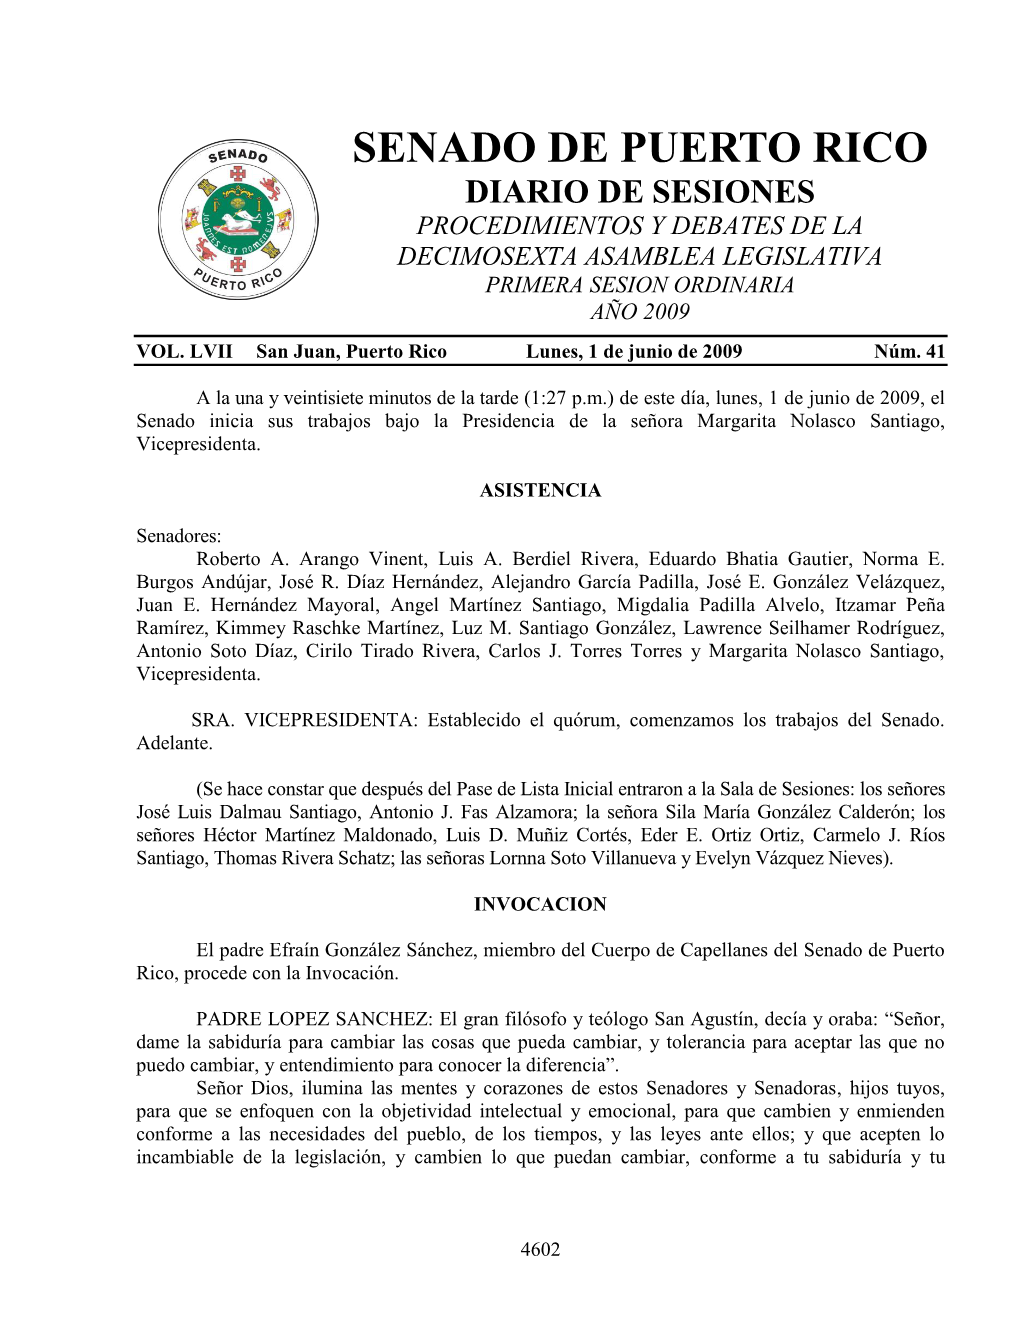 Senado De Puerto Rico Diario De Sesiones Procedimientos Y Debates De La Decimosexta Asamblea Legislativa Primera Sesion Ordinaria Año 2009 Vol